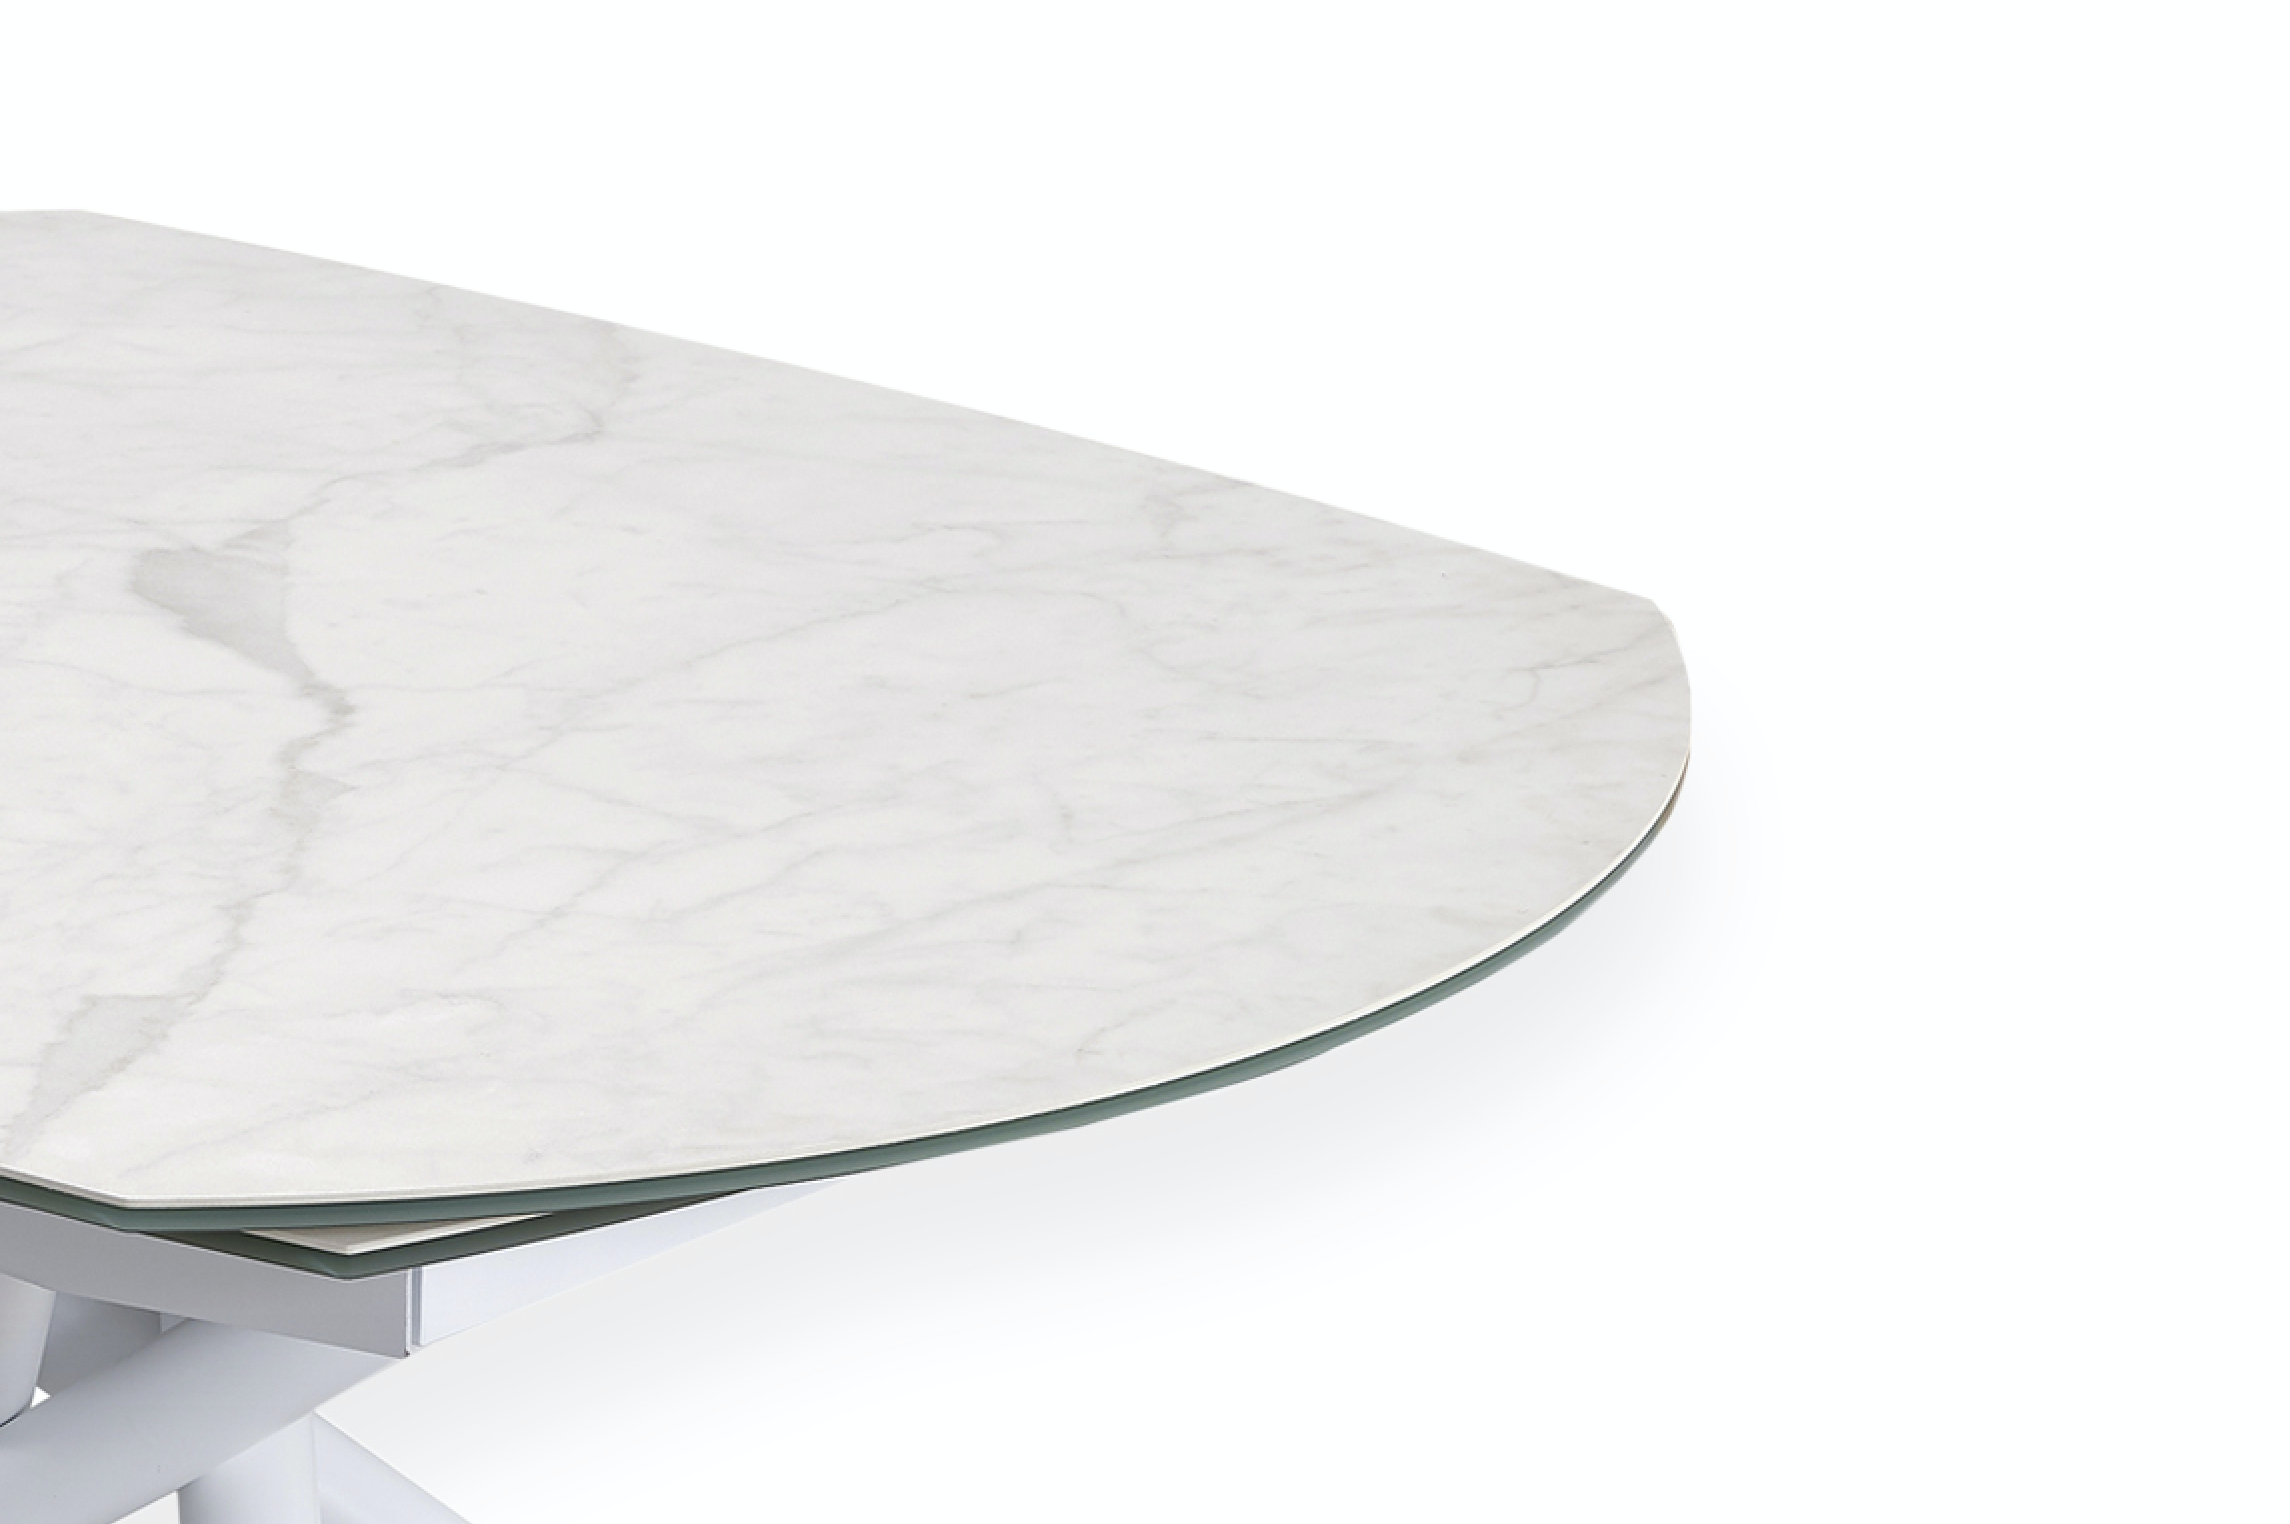 Table de salle a manger céramique extensible effet marbre blanc mat L 130cm - Miranda